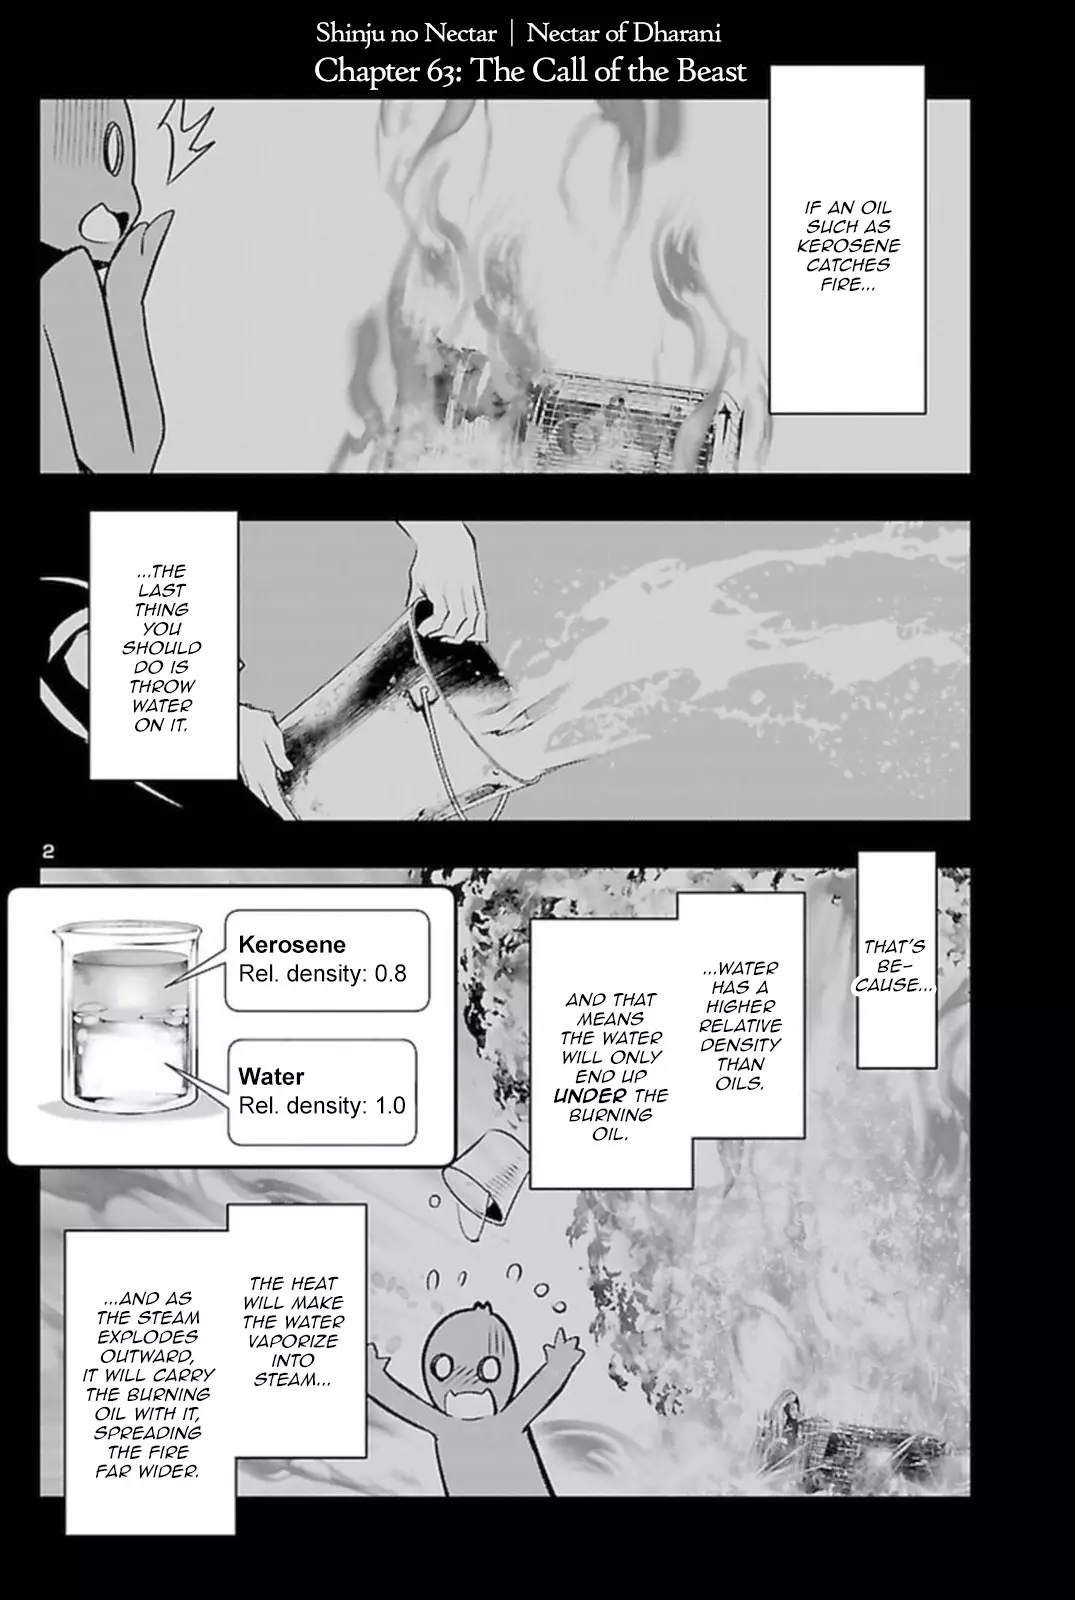 Shinju no Nectar - 63 page 1-9cc8f522